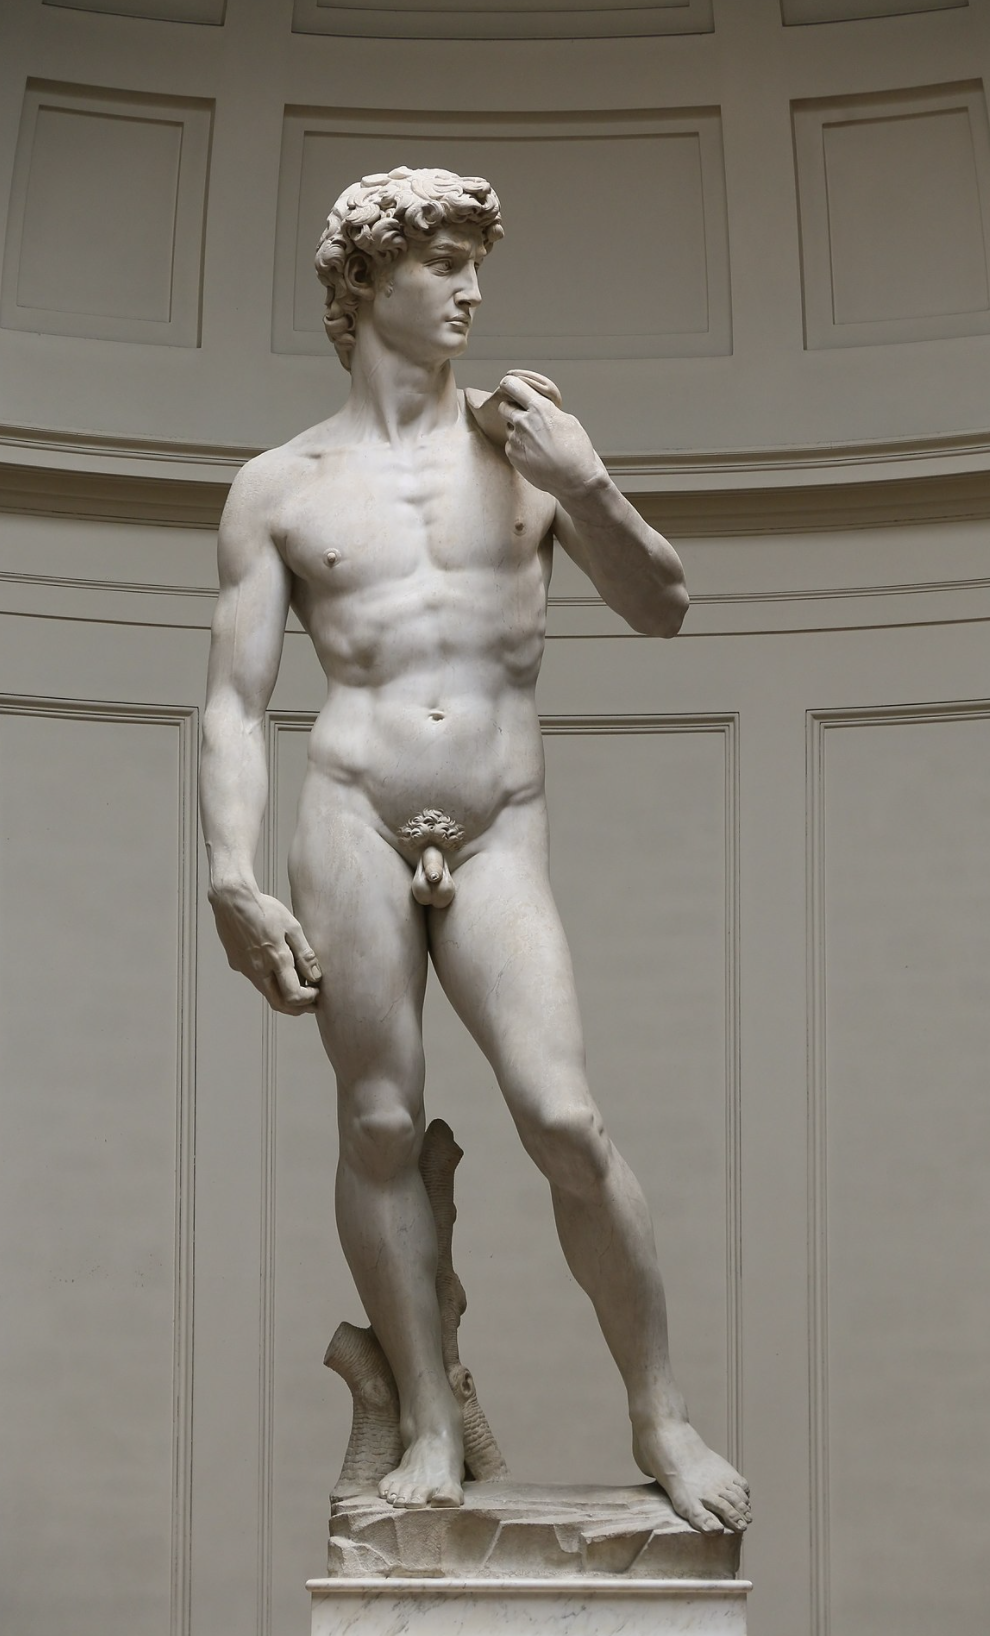 https://en.wikipedia.org/wiki/David_(Michelangelo)